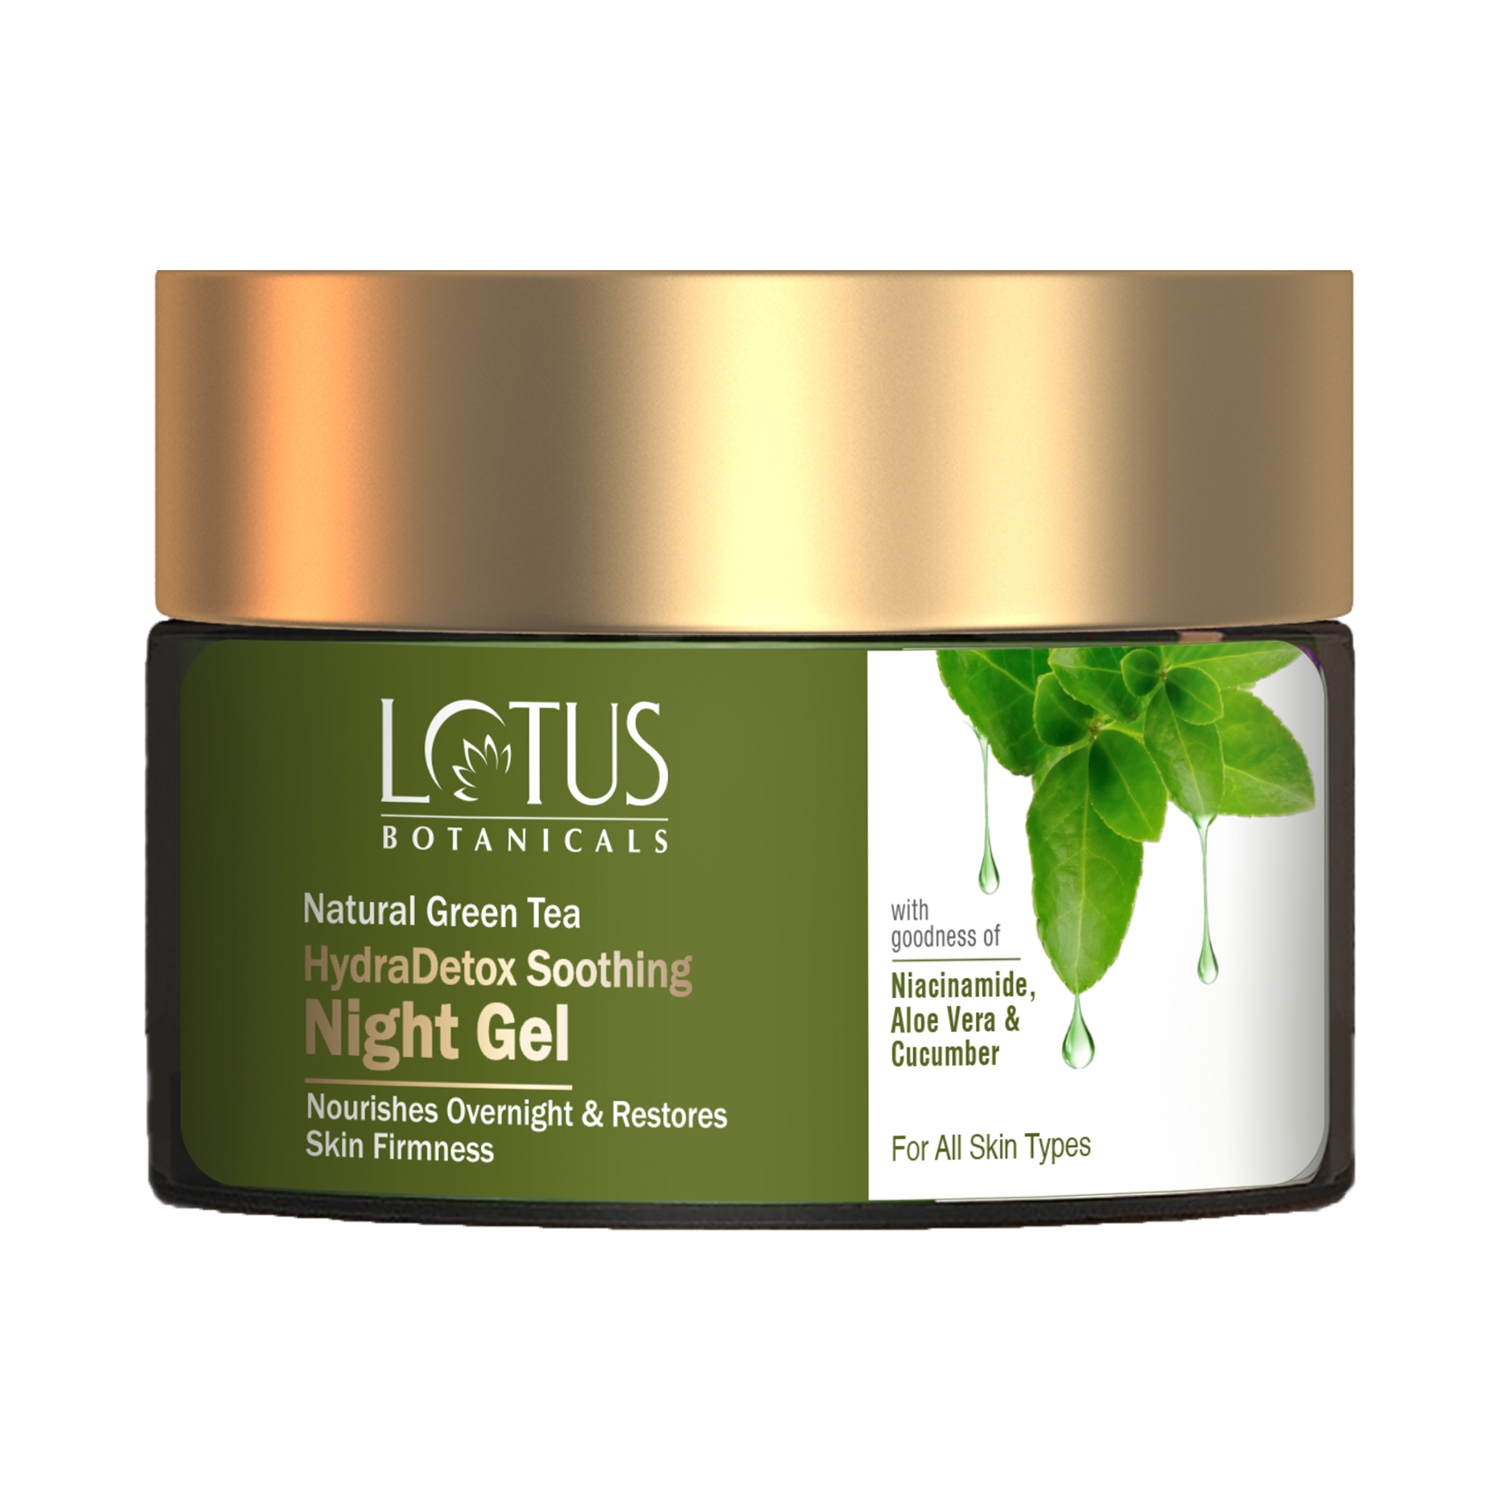 Lotus Botanicals | Lotus Botanicals Natural Green Tea Hydradetox Soothing Night Gel (50g)